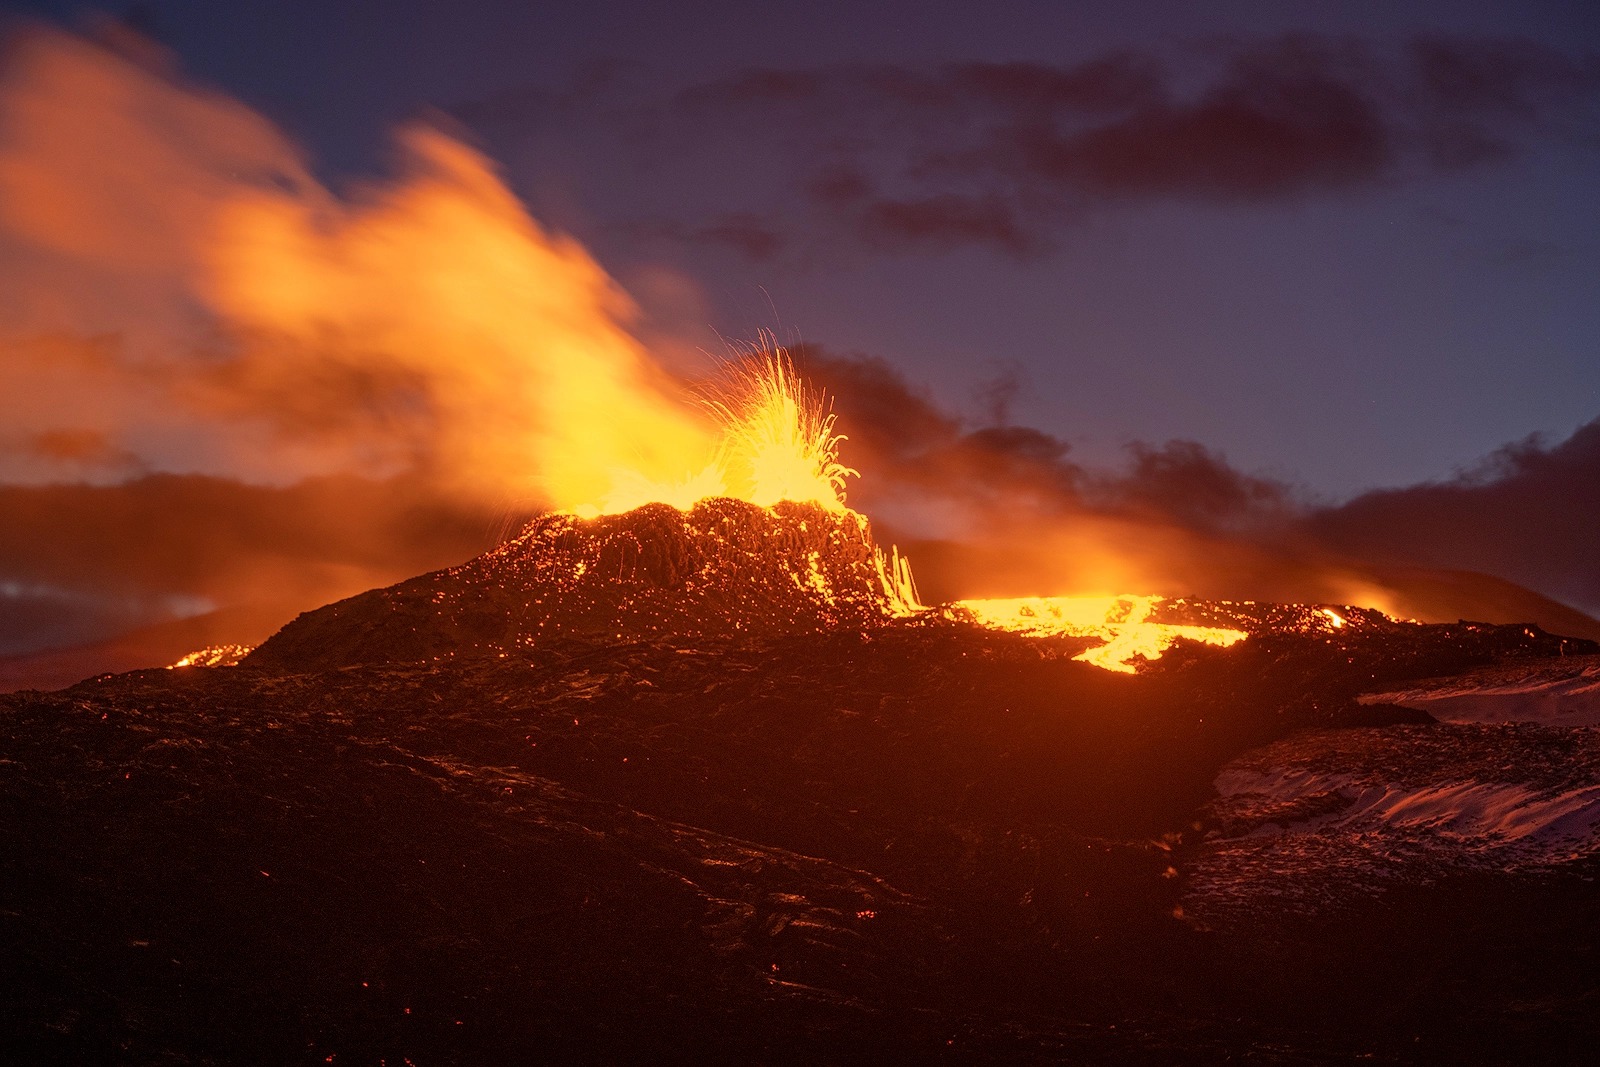 Nếu bạn yêu thích thảm họa tự nhiên, bạn không thể bỏ qua hình ảnh về núi lửa phun trào. Sức mạnh khủng khiếp của núi lửa sẽ khiến cho bạn nhớ mãi. Với những cột khói, tro bụi và tia sáng đỏ rực, bạn sẽ được tận mắt chứng kiến cảnh tượng kinh hoàng này.